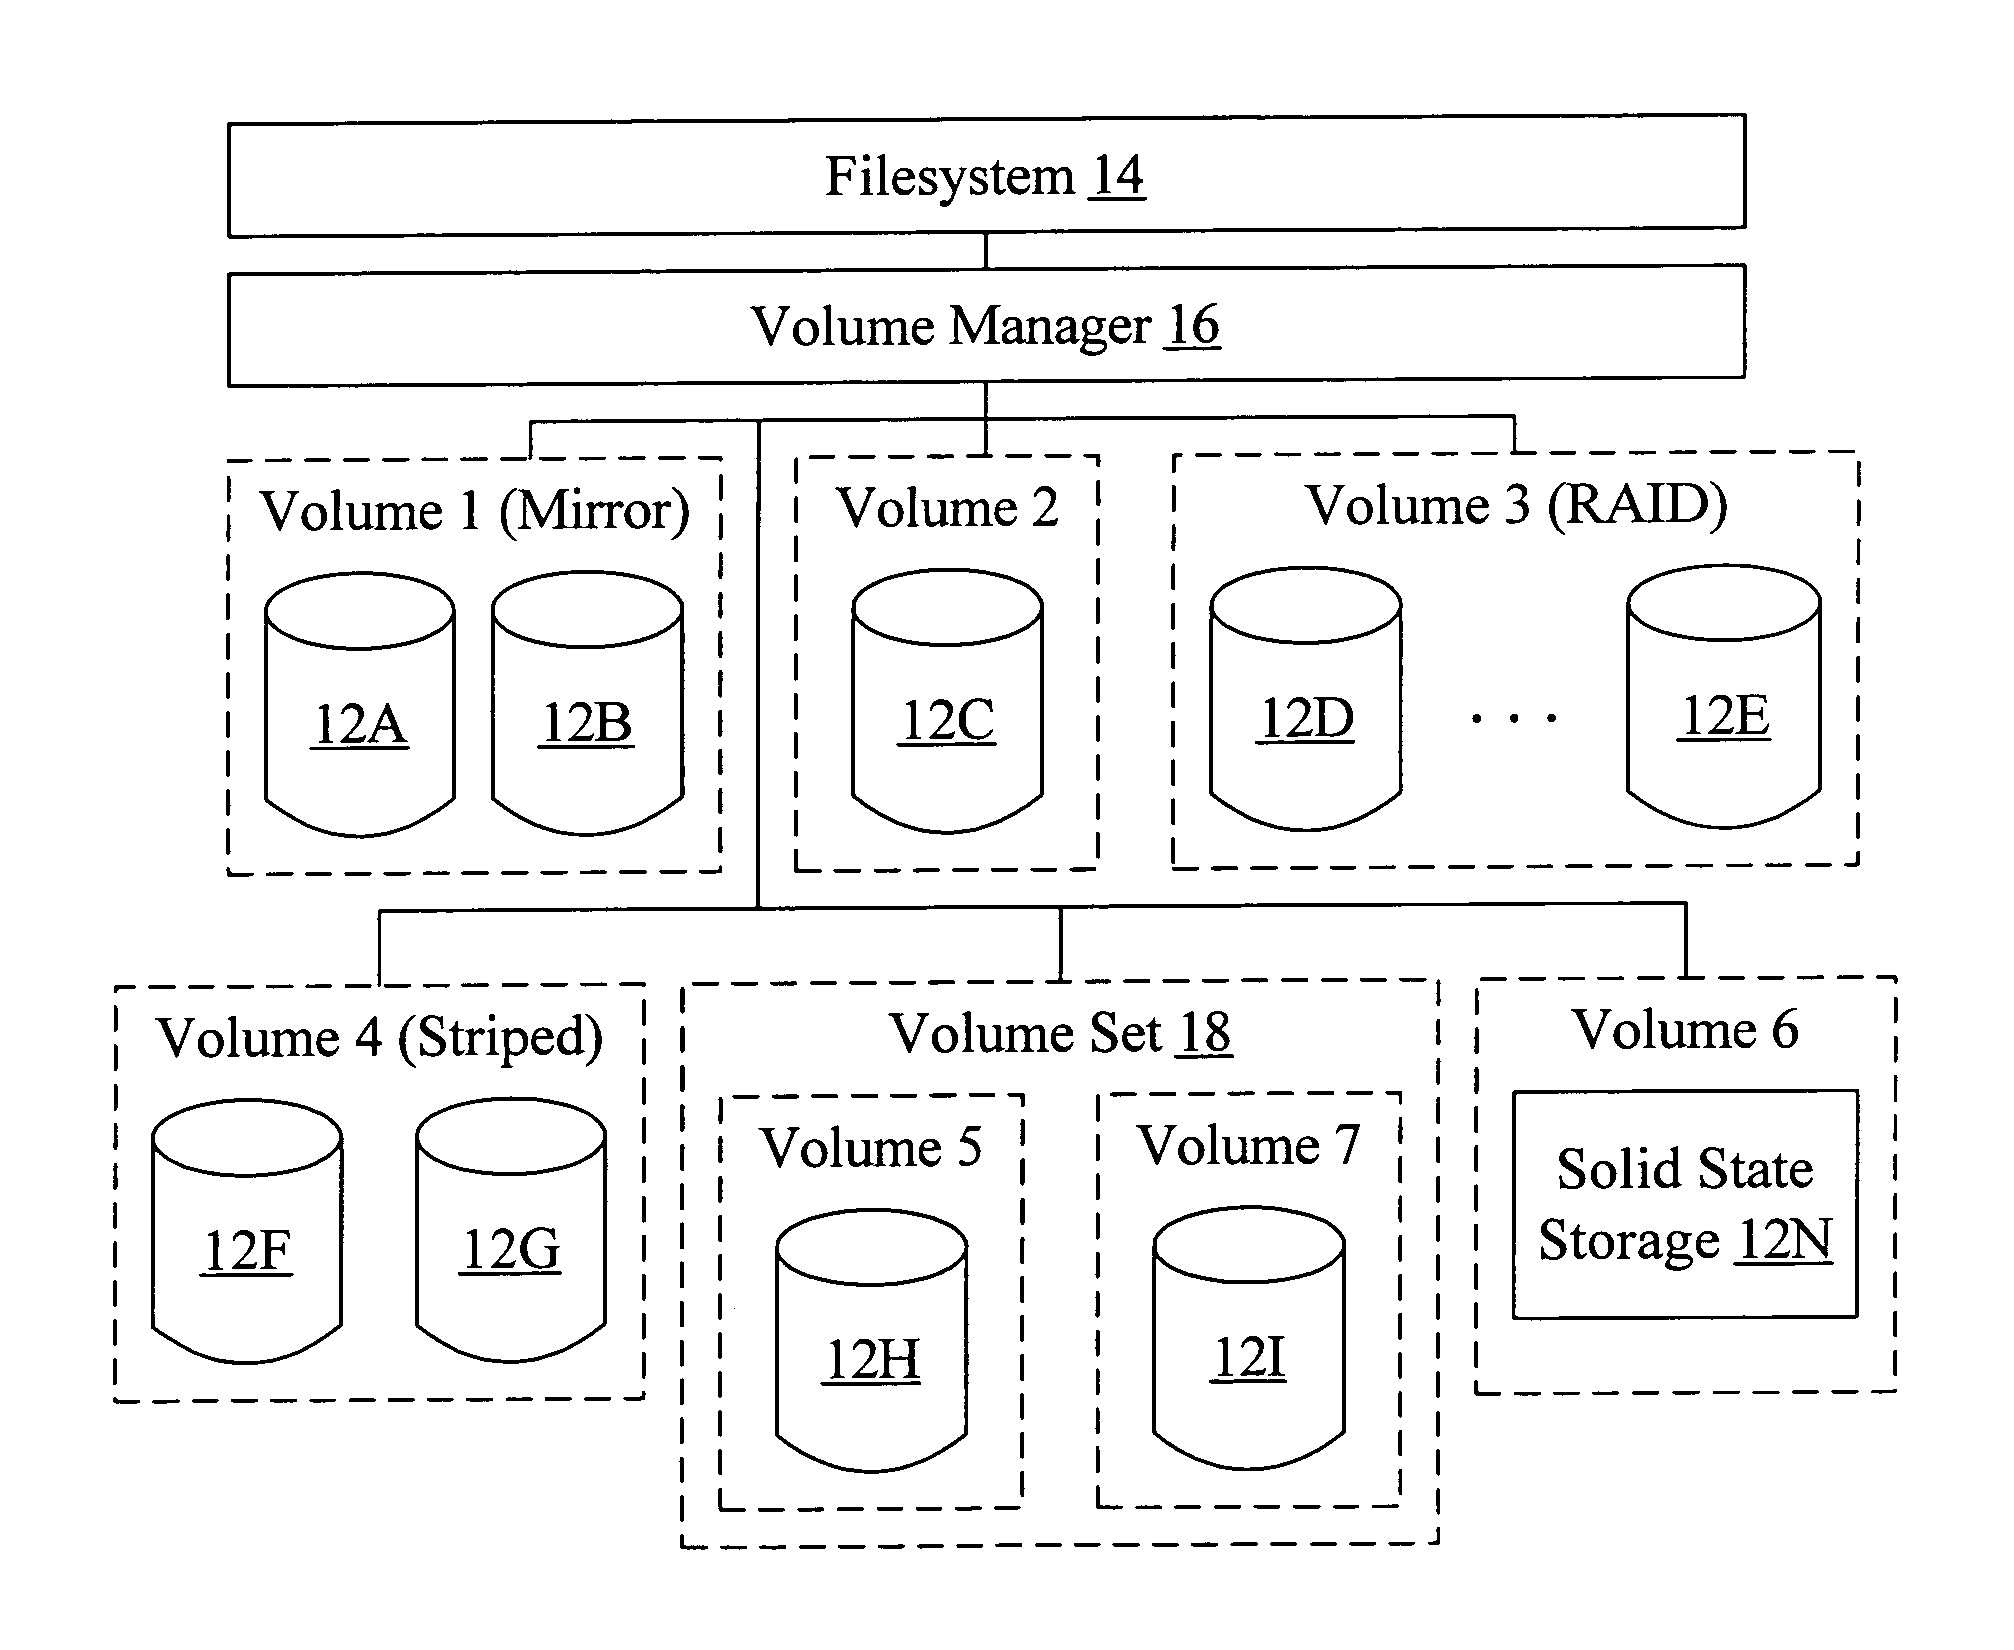 Multi-volume file support